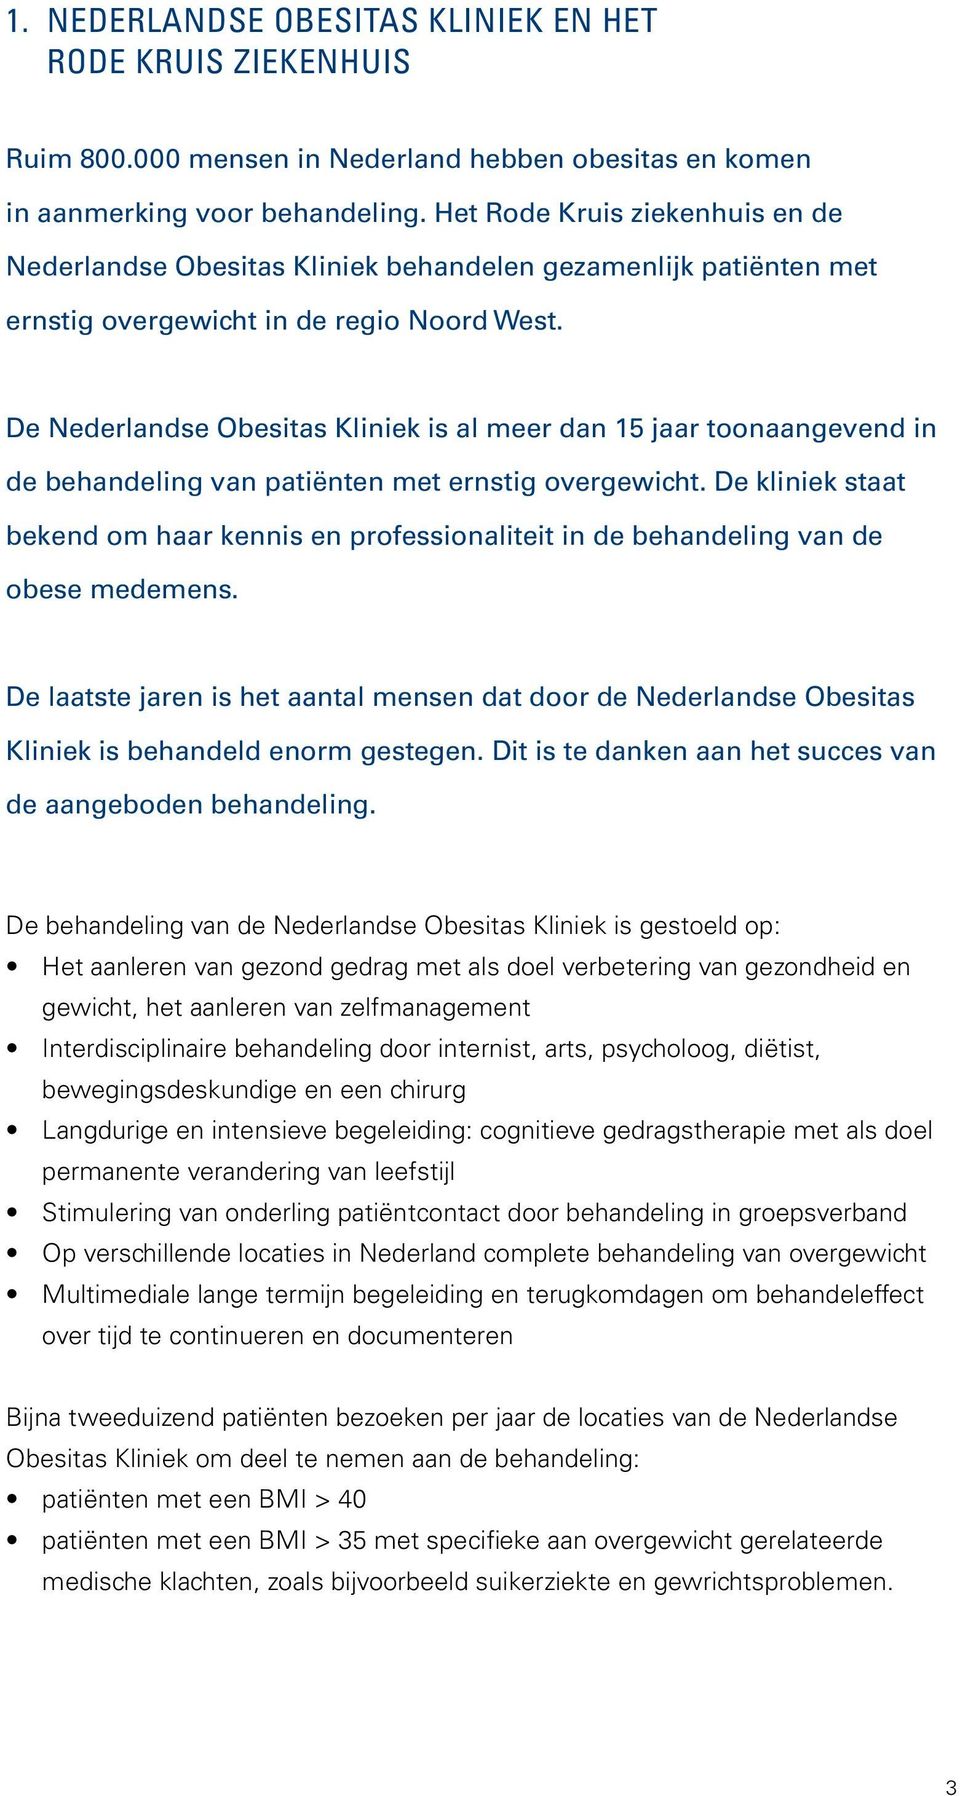 De Nederlandse Obesitas Kliniek is al meer dan 15 jaar toonaangevend in de behandeling van patiënten met ernstig overgewicht.